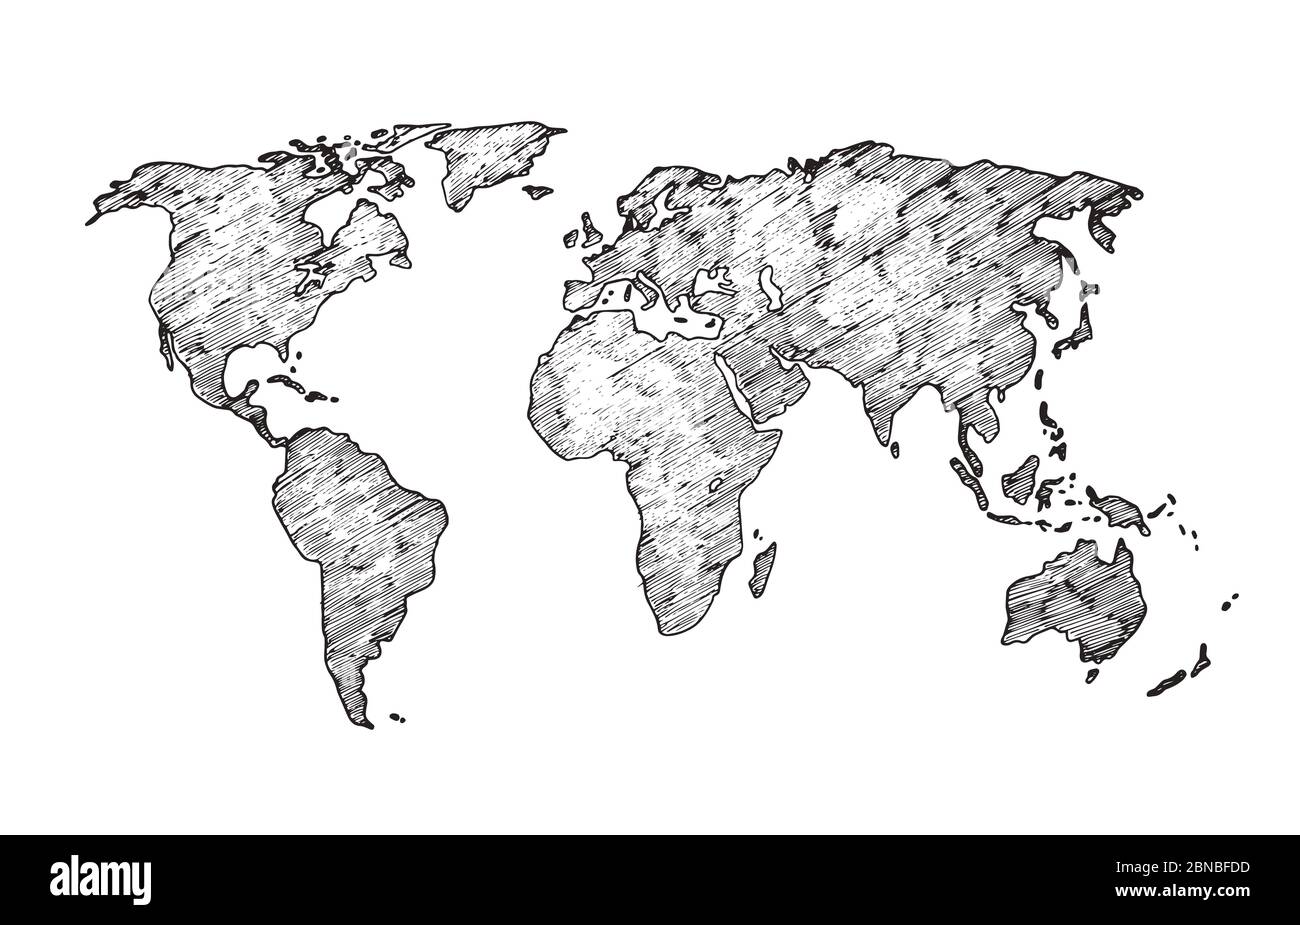 Esquisse de la carte du monde. Terre continents dessin rugueux. Carte vectorielle de classe à gribouillage isolée. Illustration de la carte du monde, afrique et europe, amérique et asie Illustration de Vecteur